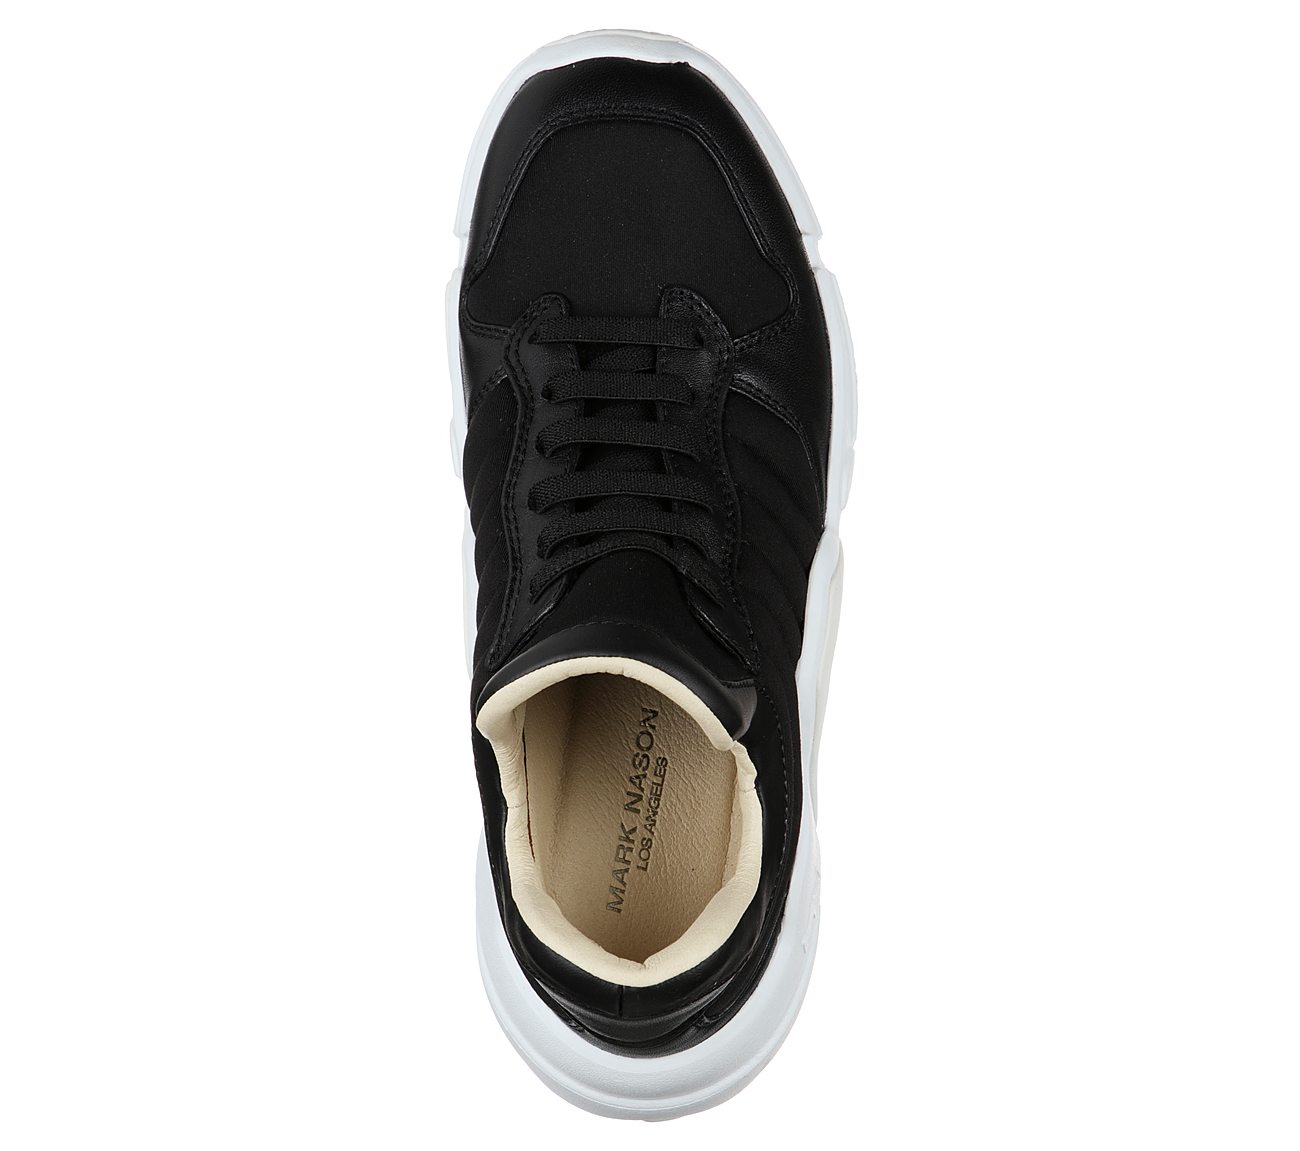 NEO BLOCK - AMPED, BLACK/WHITE Footwear Top View